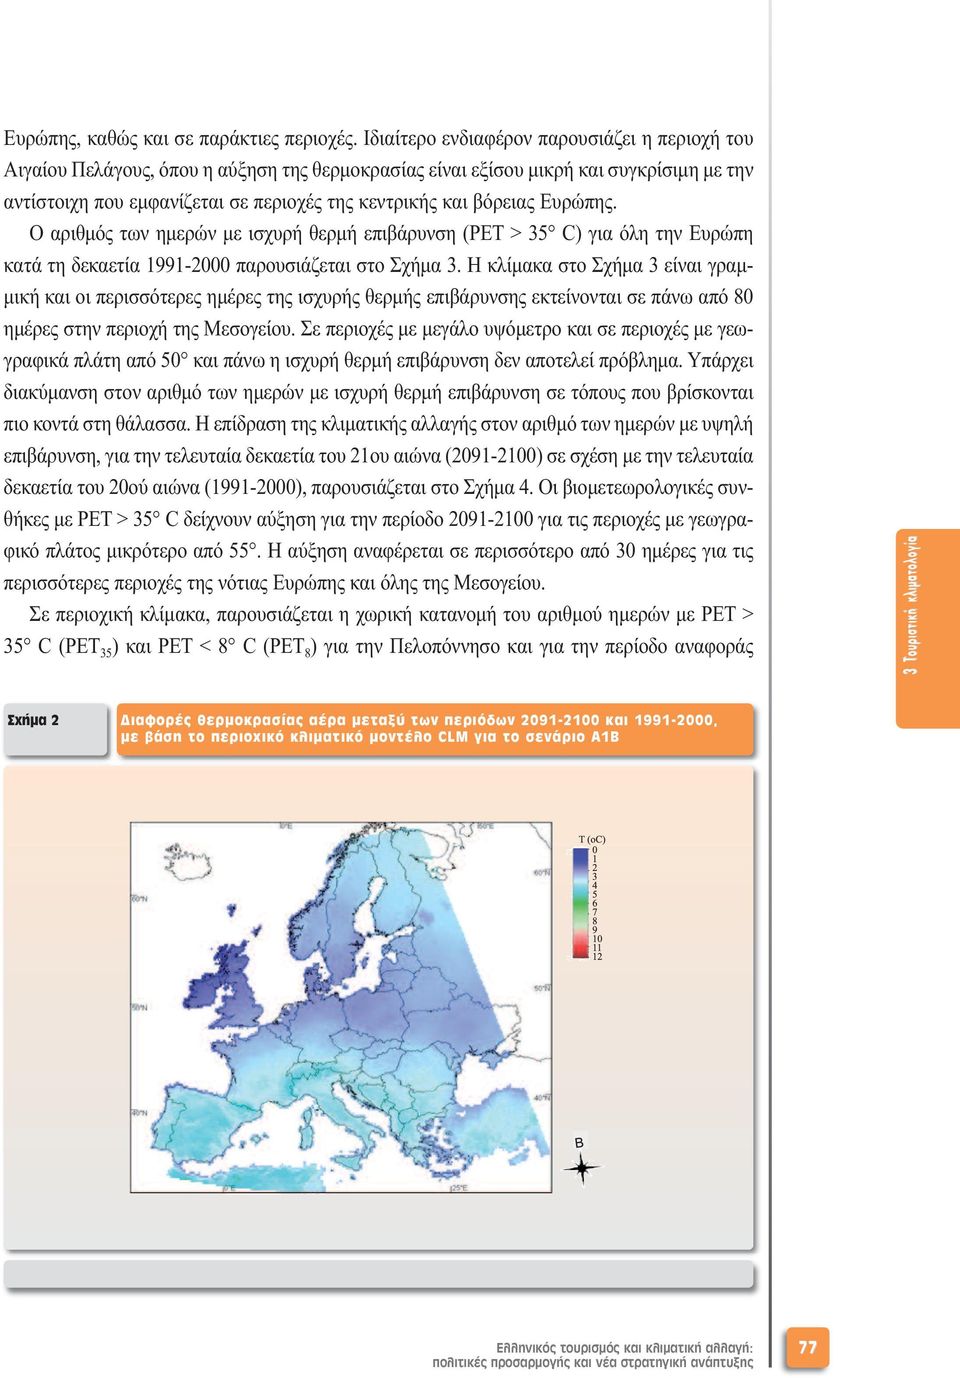 βόρειας Ευρώπης. Ο αριθµός των ηµερών µε ισχυρή θερµή επιβάρυνση (PET > 35 C) για όλη την Ευρώπη κατά τη δεκαετία 1991-2000 παρουσιάζεται στο Σχήµα 3.